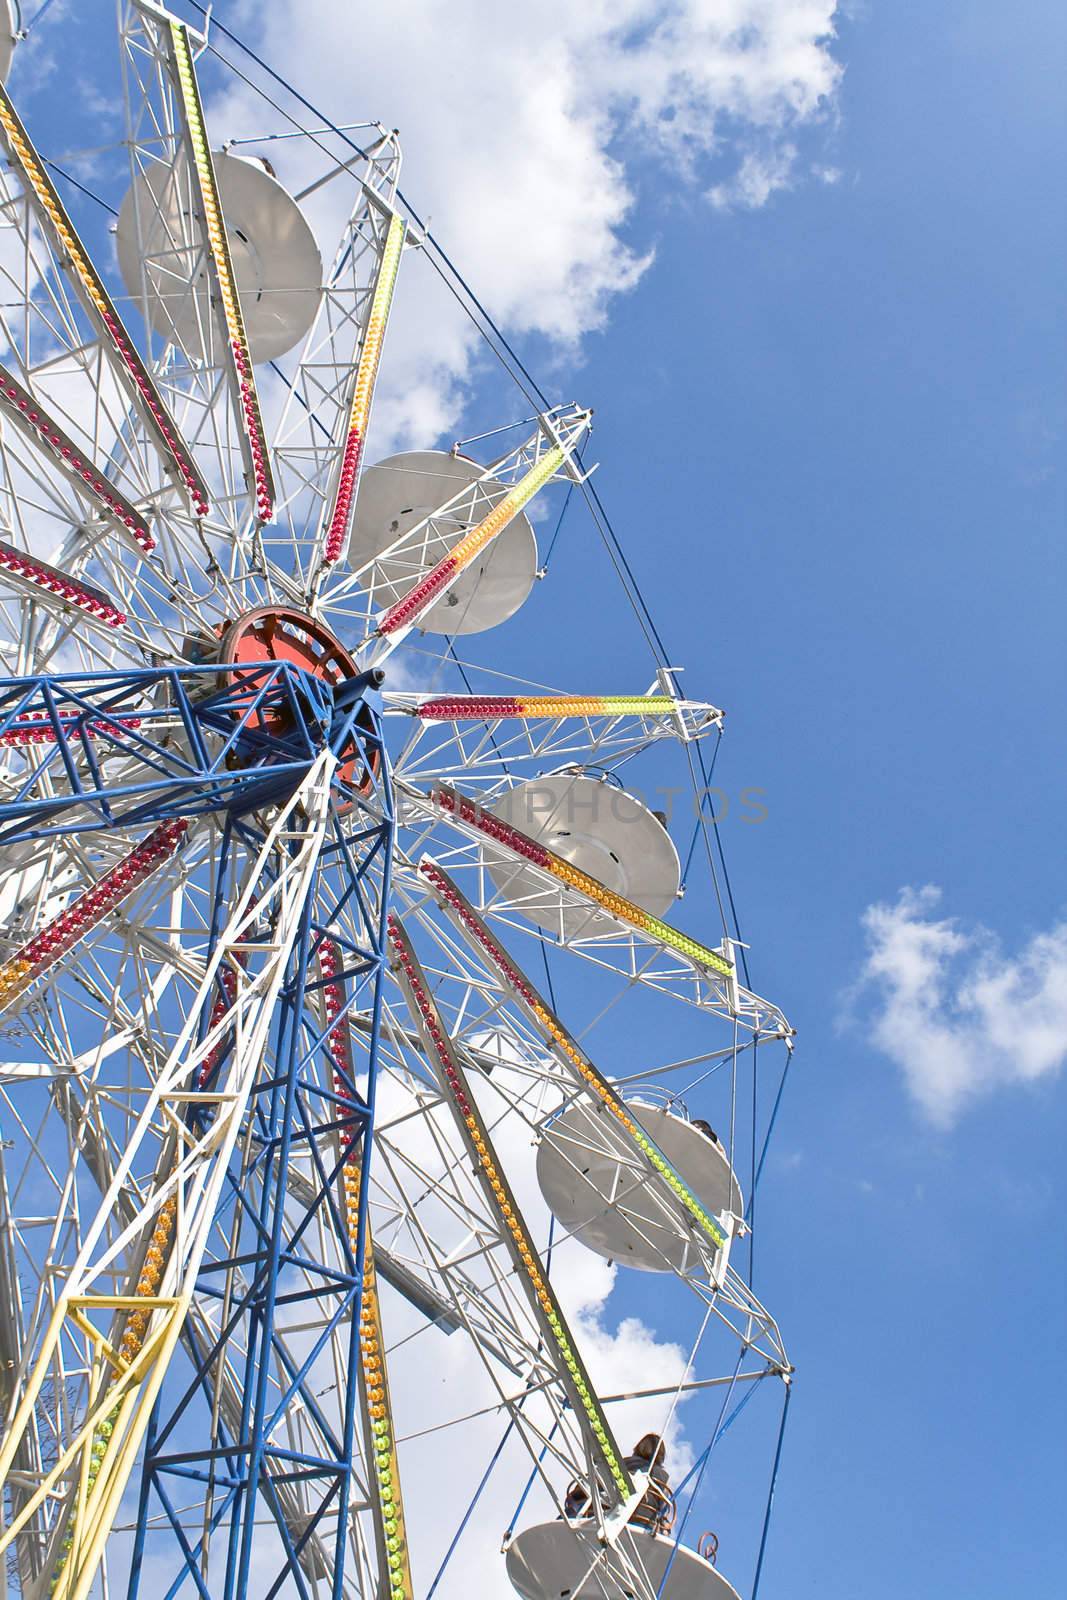 Ferris Wheel on a blue sky